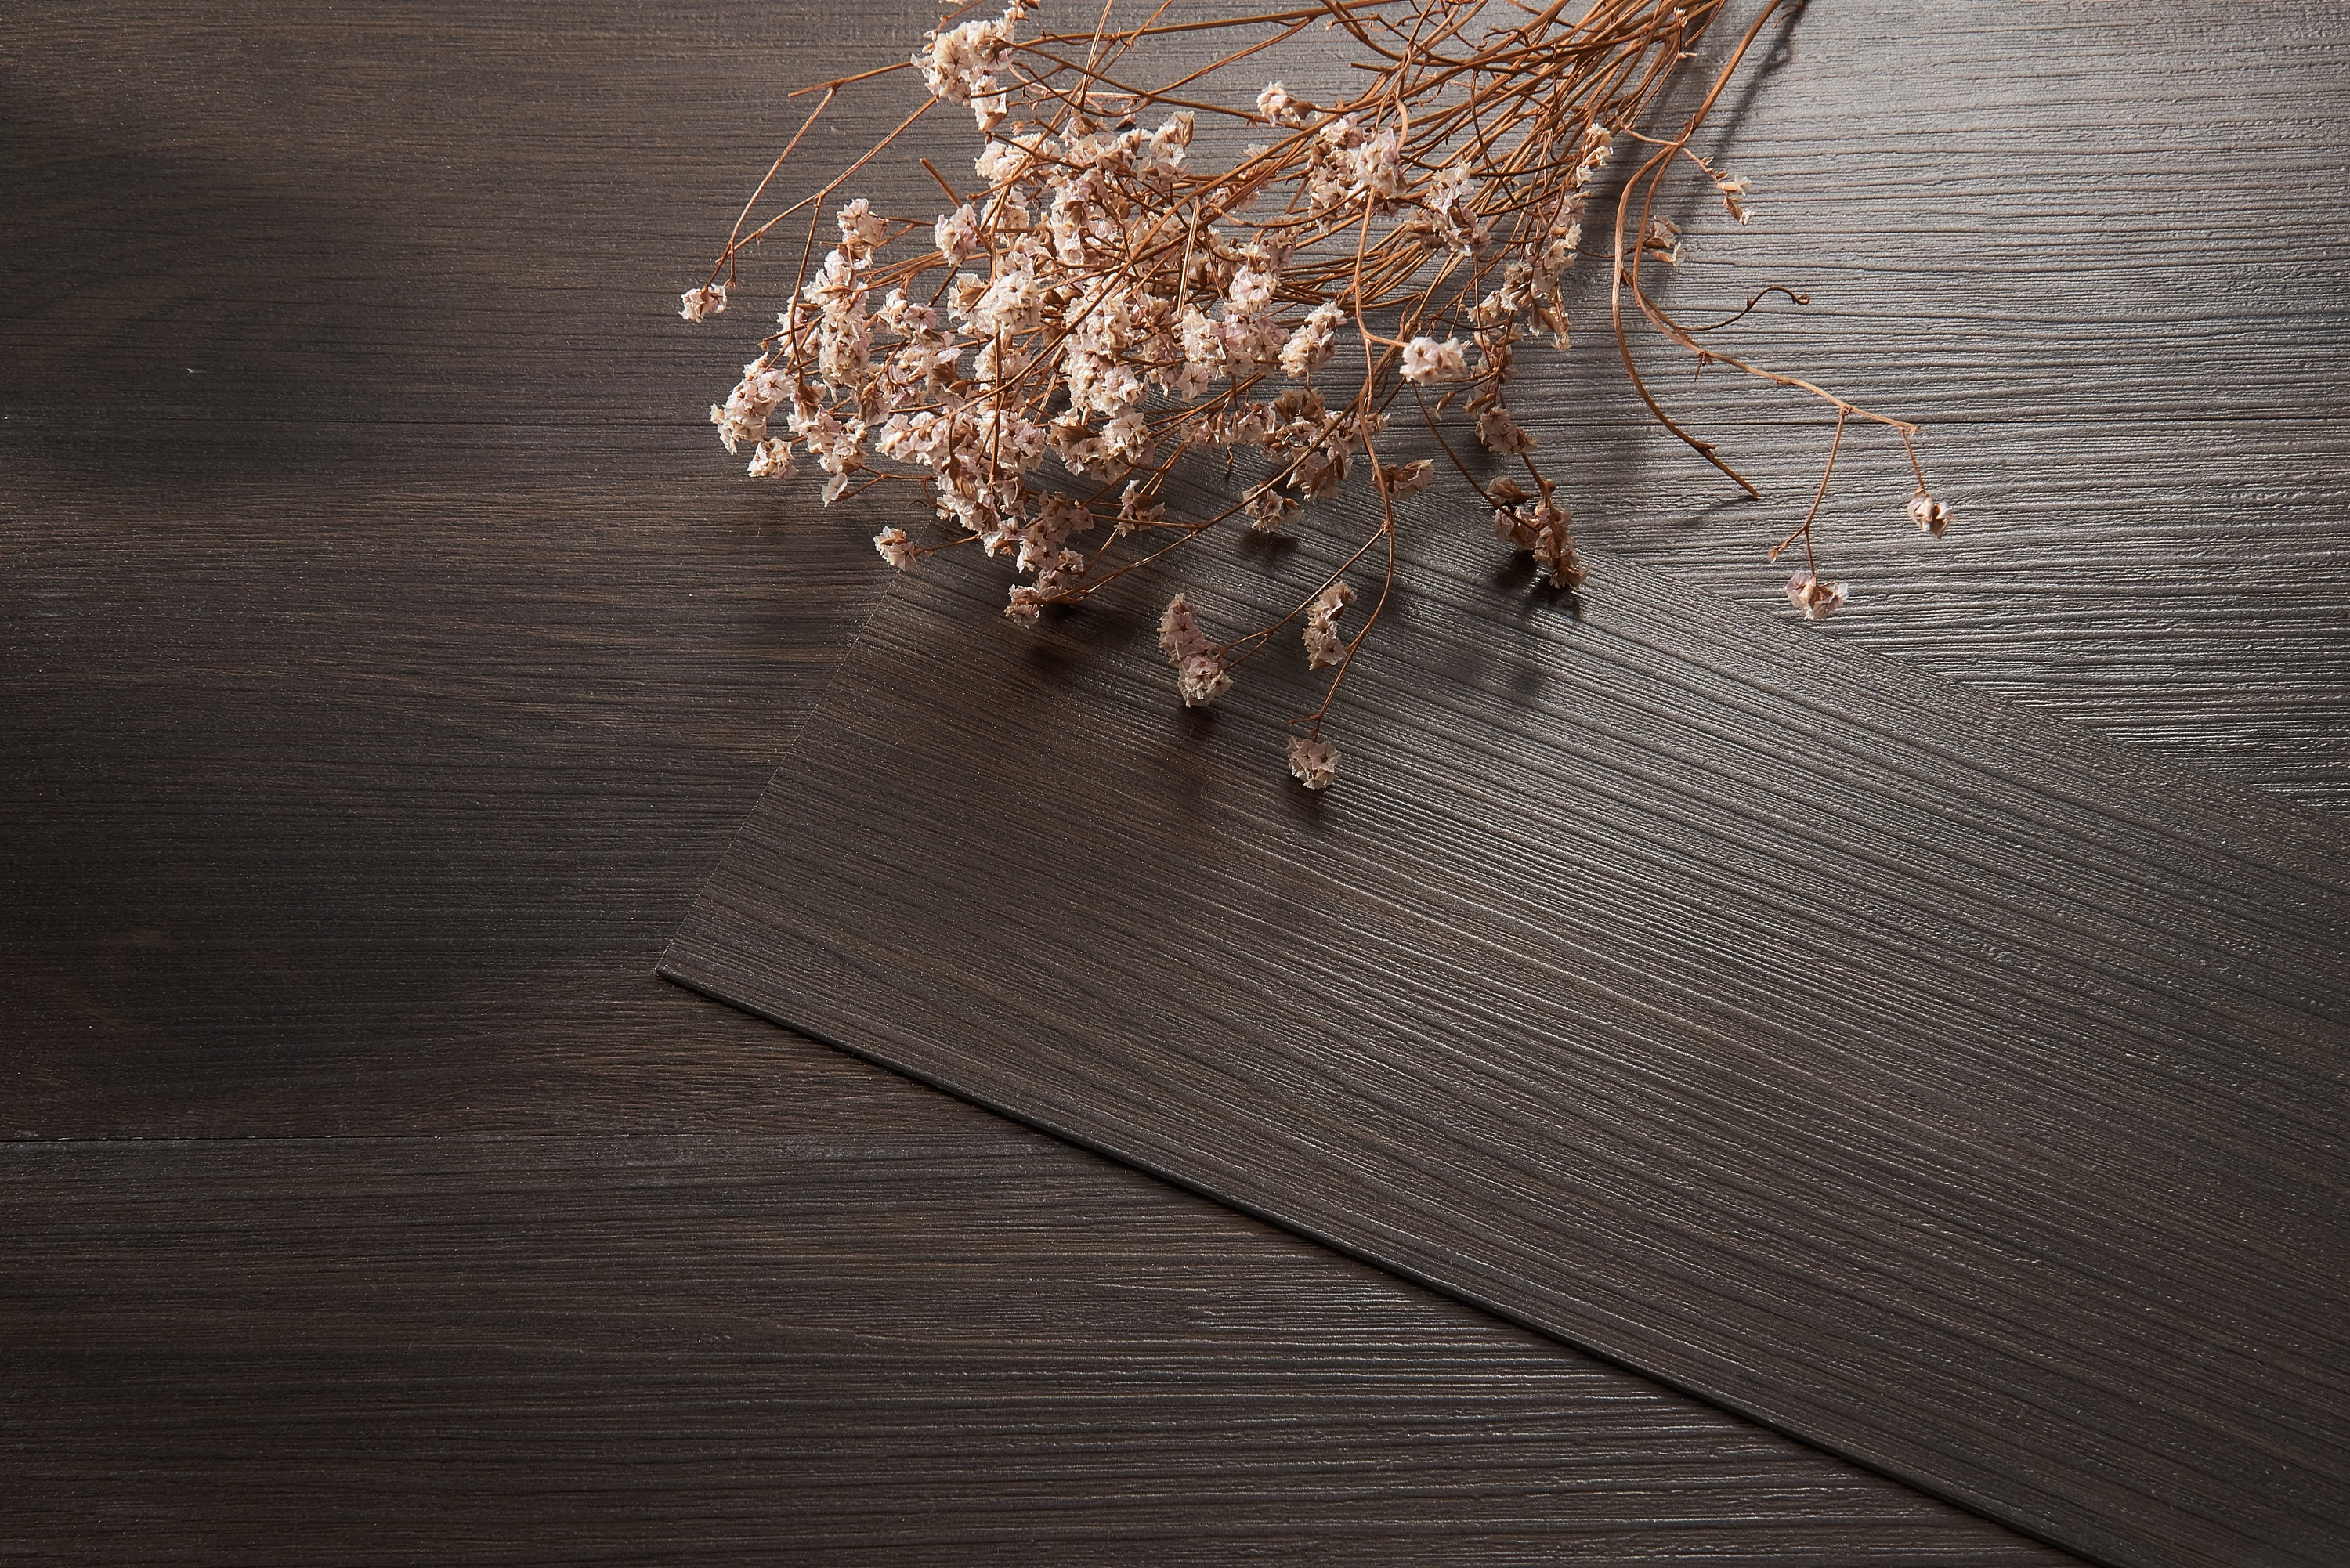 拍摄木板道具 ins仿真木地板 静物美食拍照木纹背景板|摄影|产品摄影